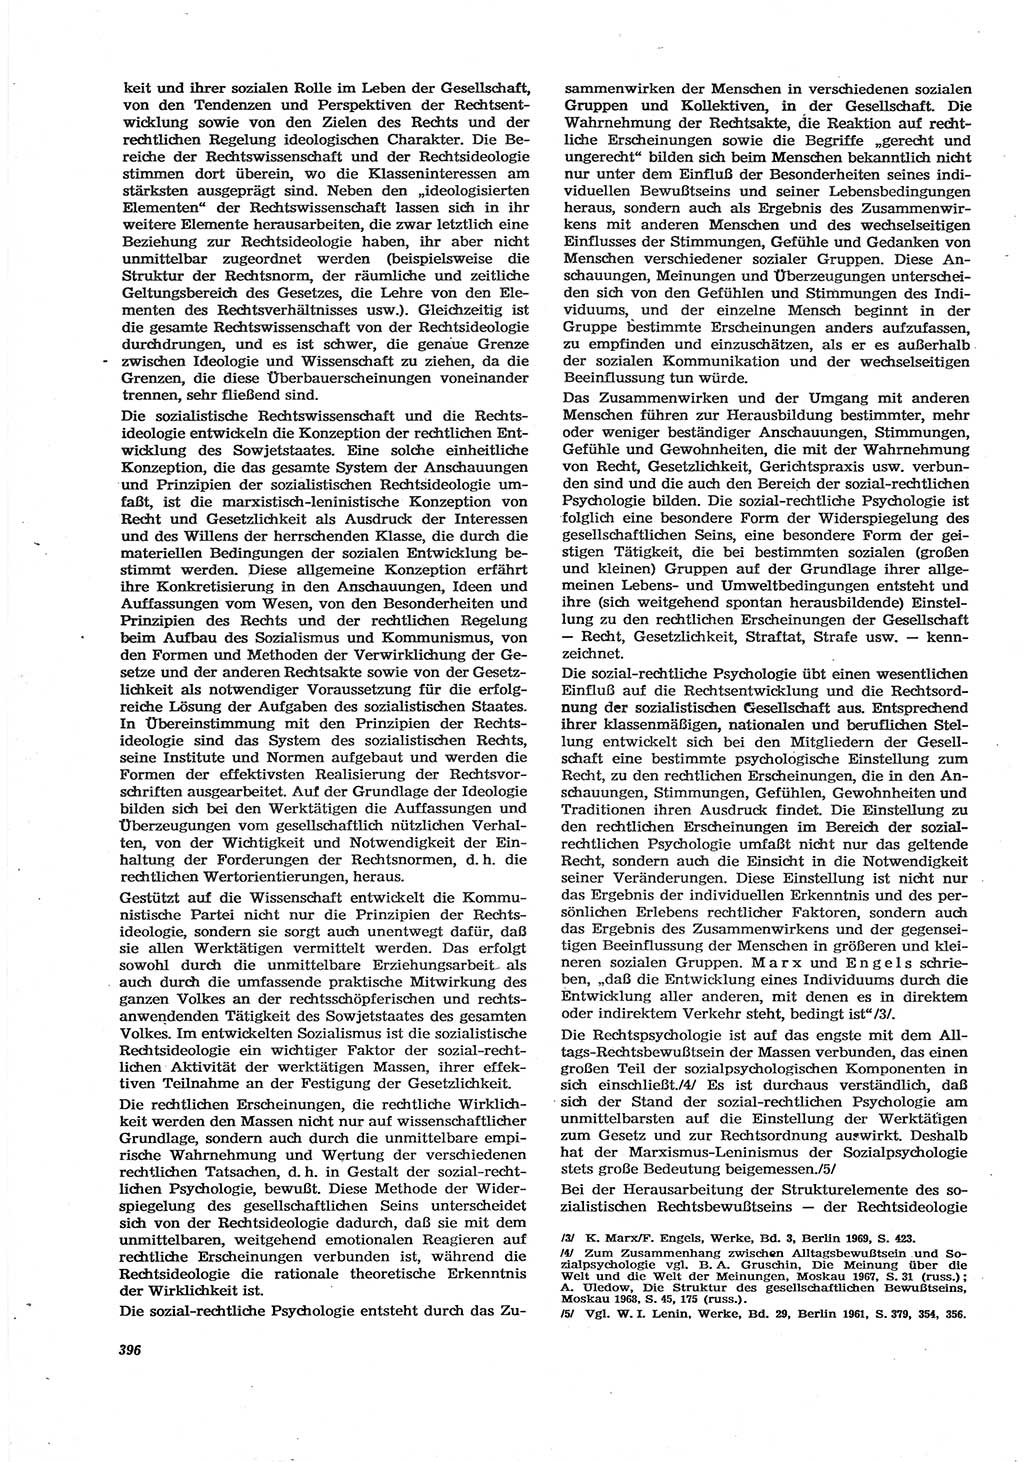 Neue Justiz (NJ), Zeitschrift für Recht und Rechtswissenschaft [Deutsche Demokratische Republik (DDR)], 30. Jahrgang 1976, Seite 396 (NJ DDR 1976, S. 396)